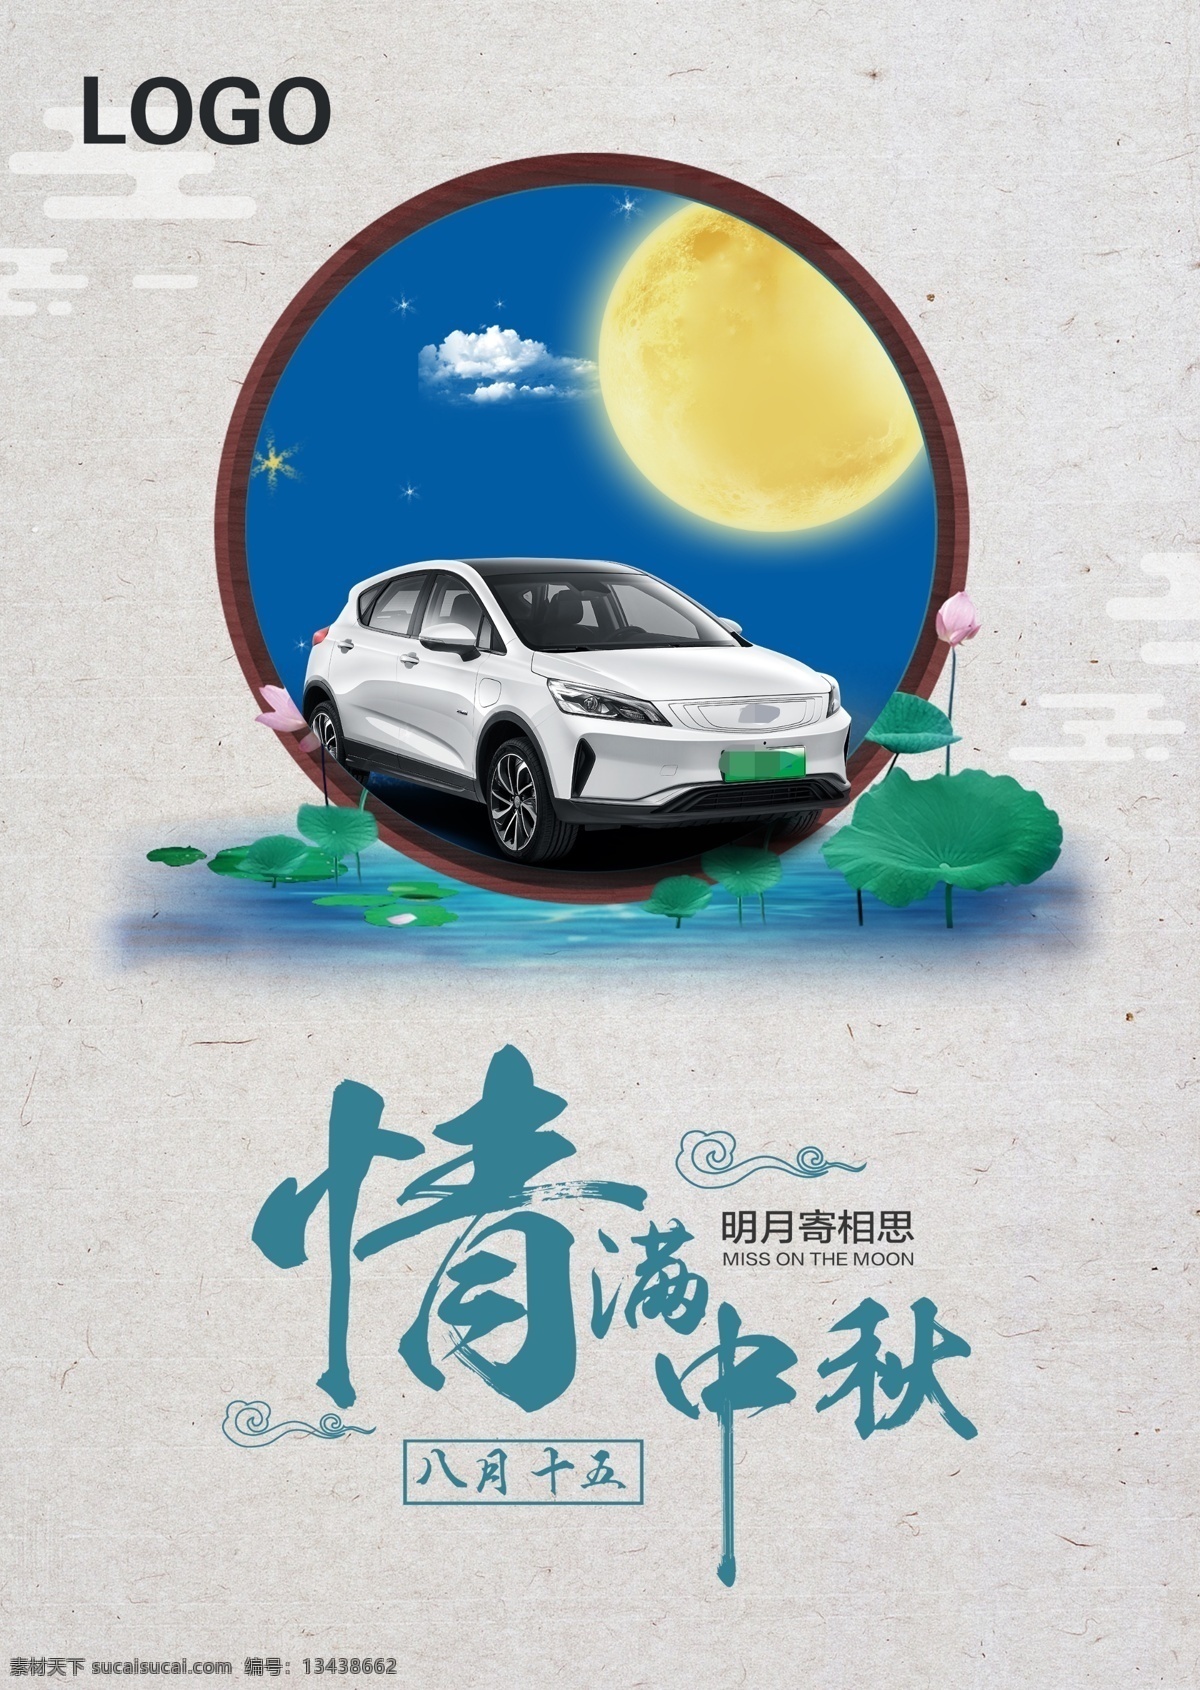 中秋节 活动 背景 板 节日海报 背景板 促销 汽车海报